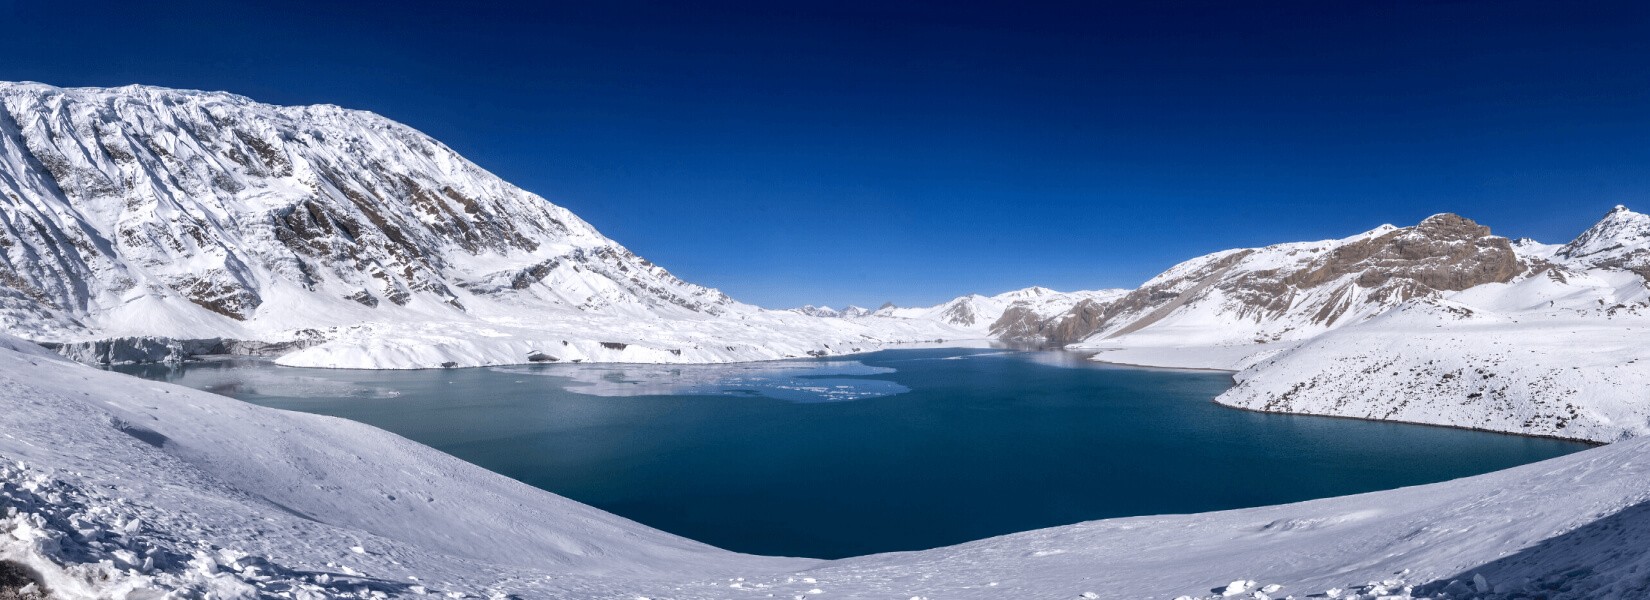 Tilicho Lake Trek | Himalayan Ecological Trekking